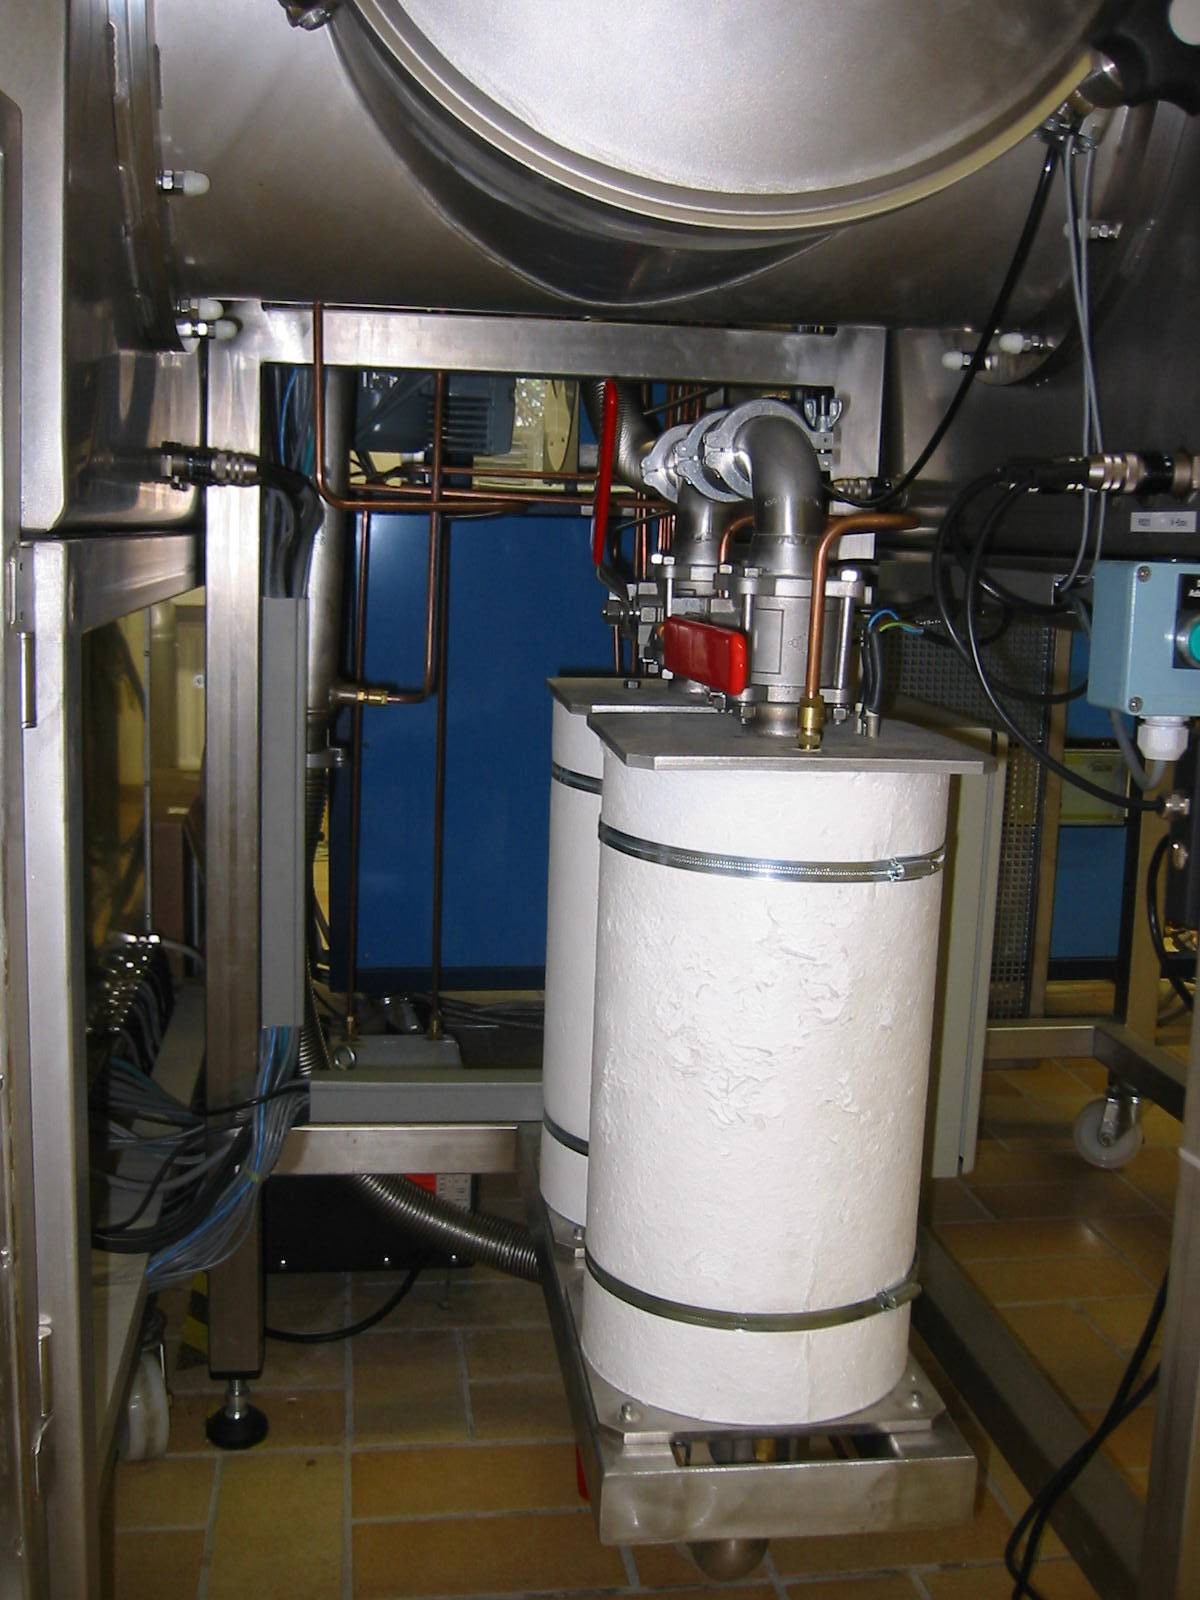 Épuration des gaz avec 2 adsorbeurs et commande de rinçage intégrée avec régulation de pression